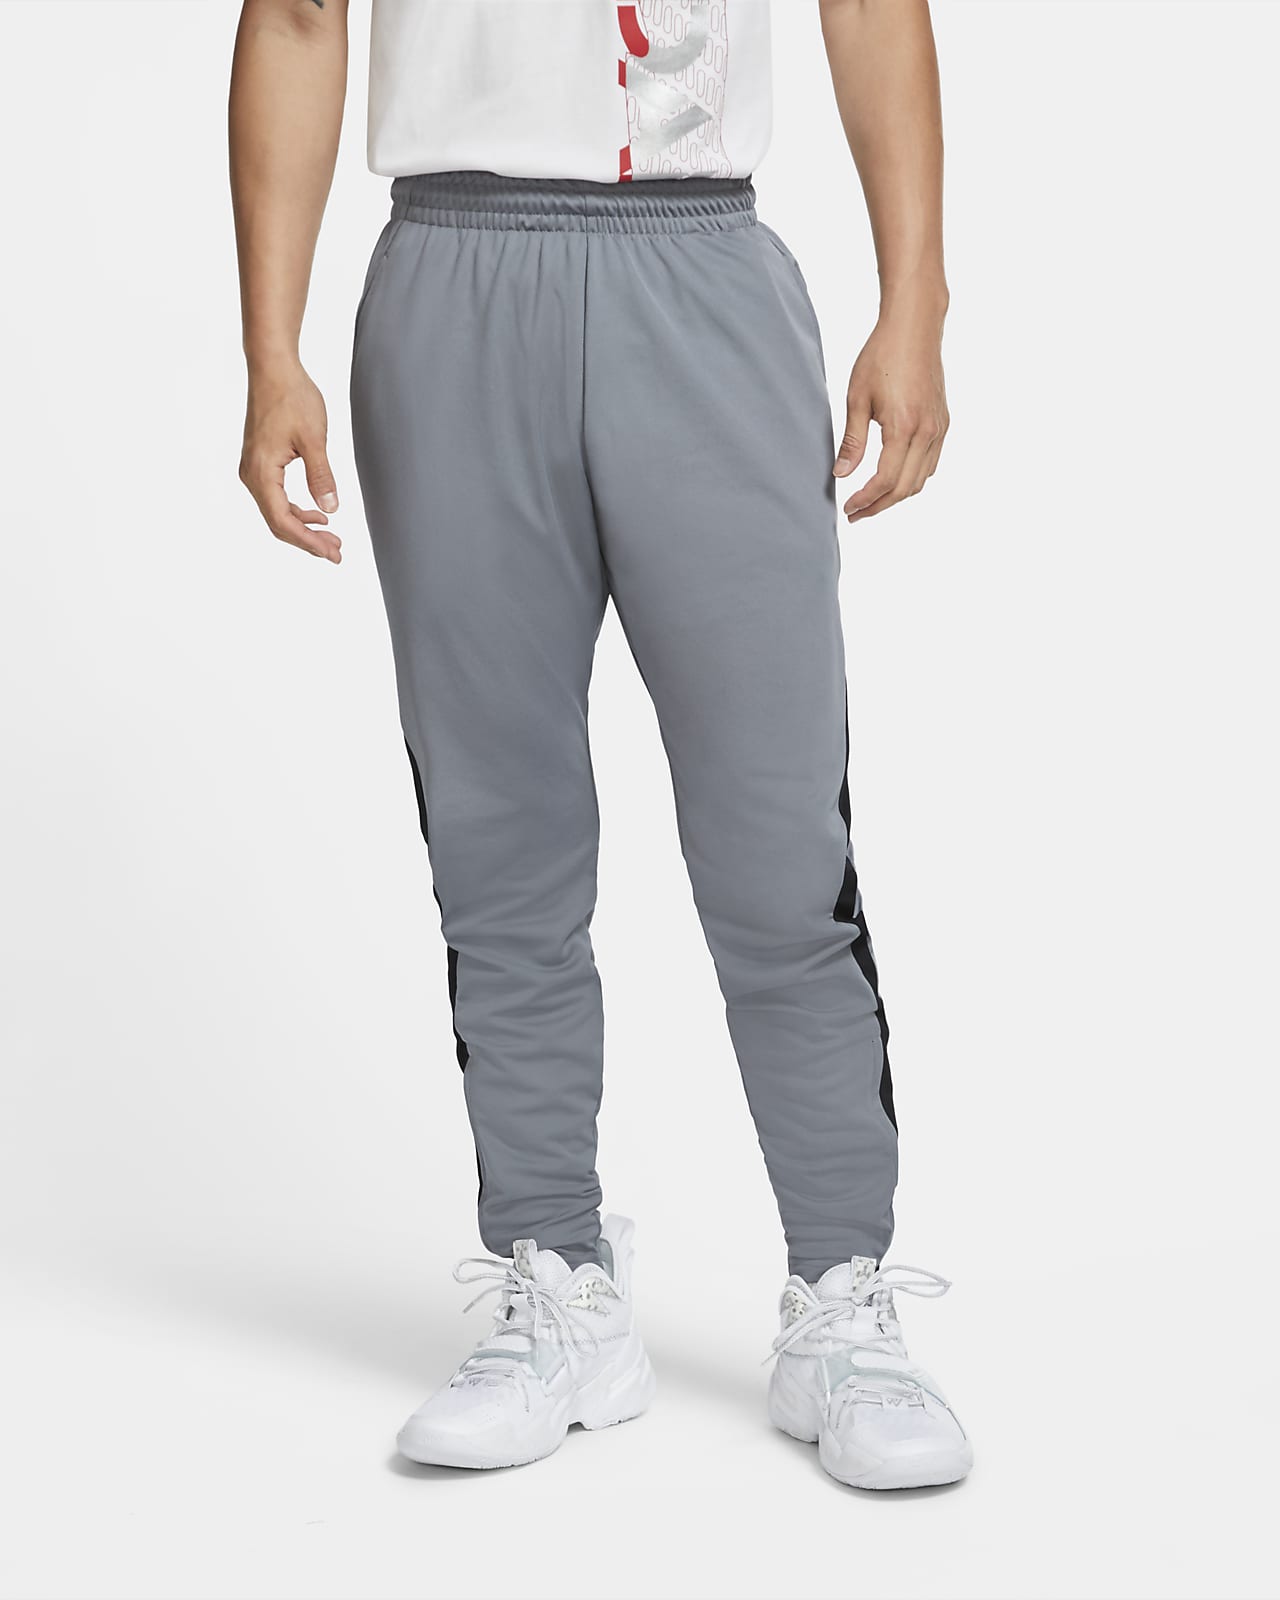 Pantaloni in maglia Jordan Dri-FIT Air - Uomo. Nike IT